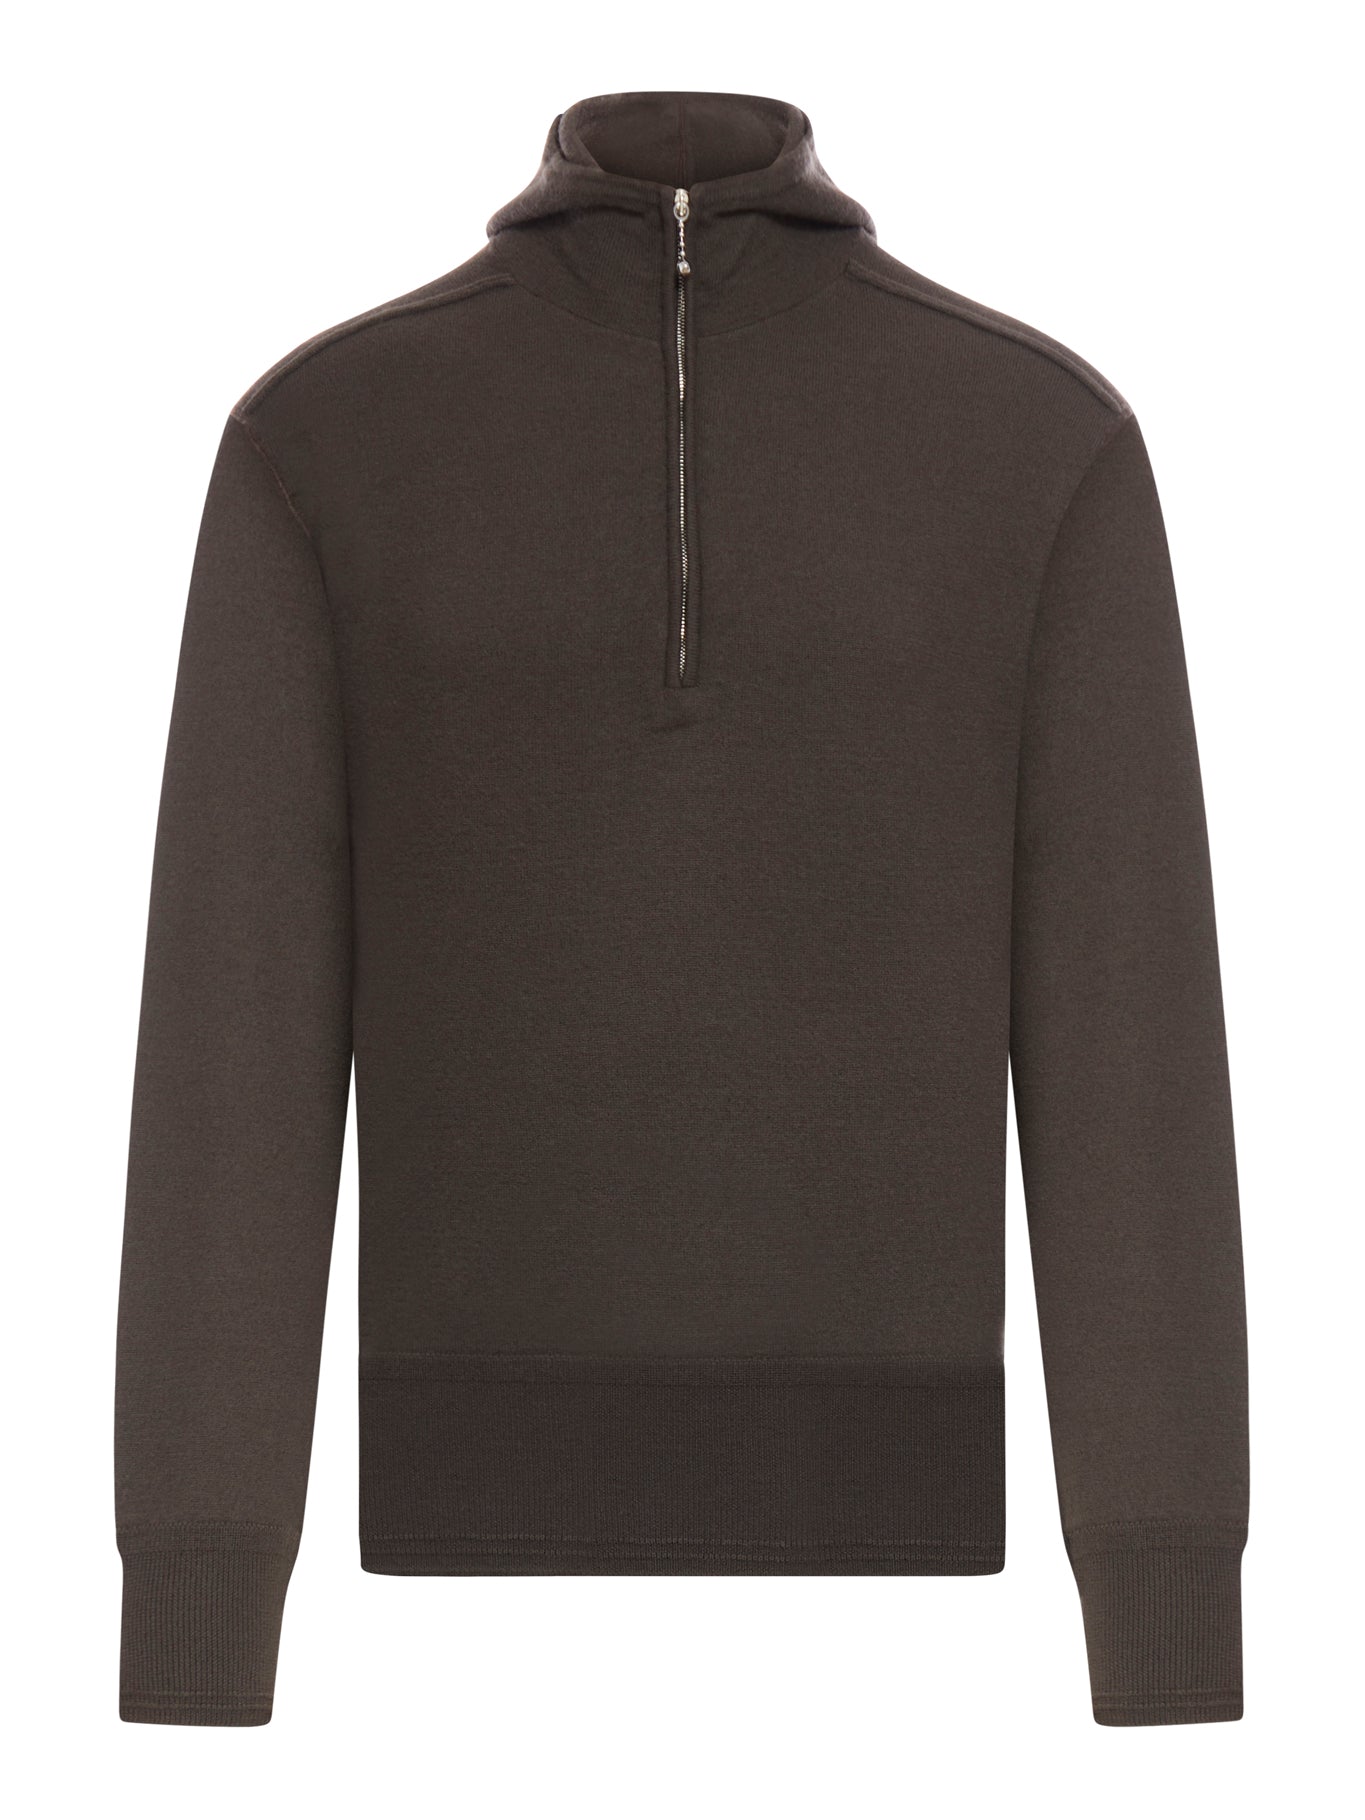 Wool sweatshirt with hood and half zip